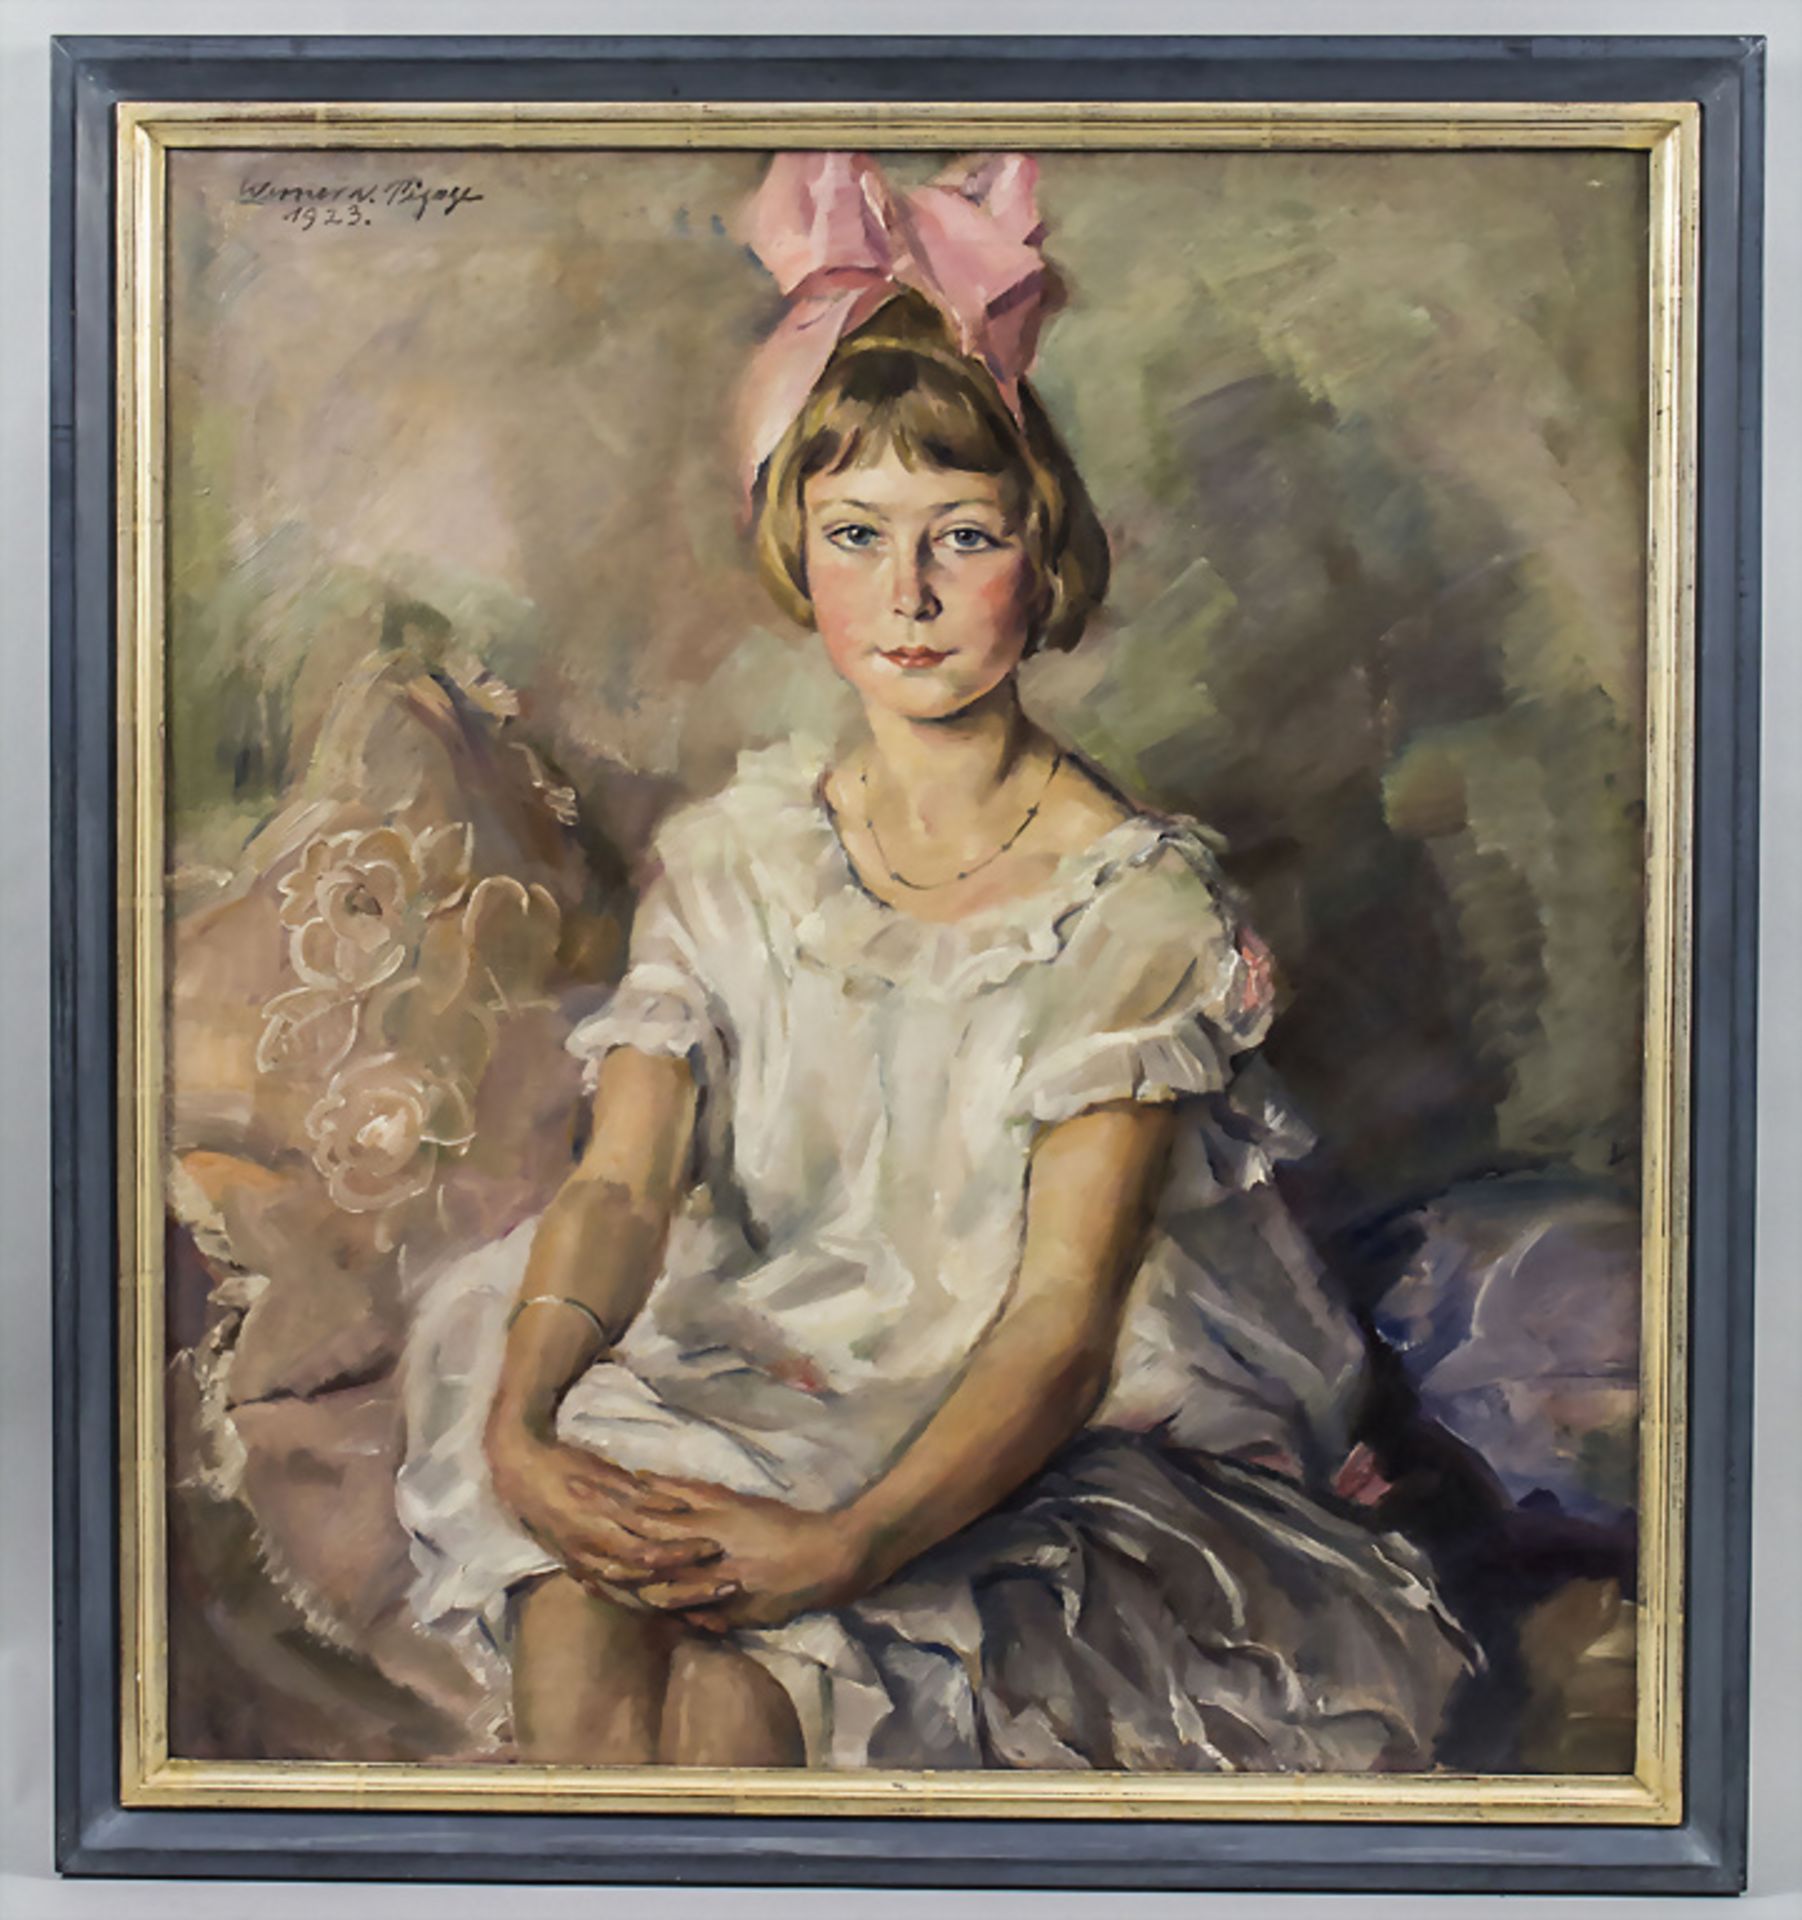 Werner VON PIGAGE (1888-1959), 'Das rosa Schleifchen' / 'The pink bow', 1923 - Image 2 of 5